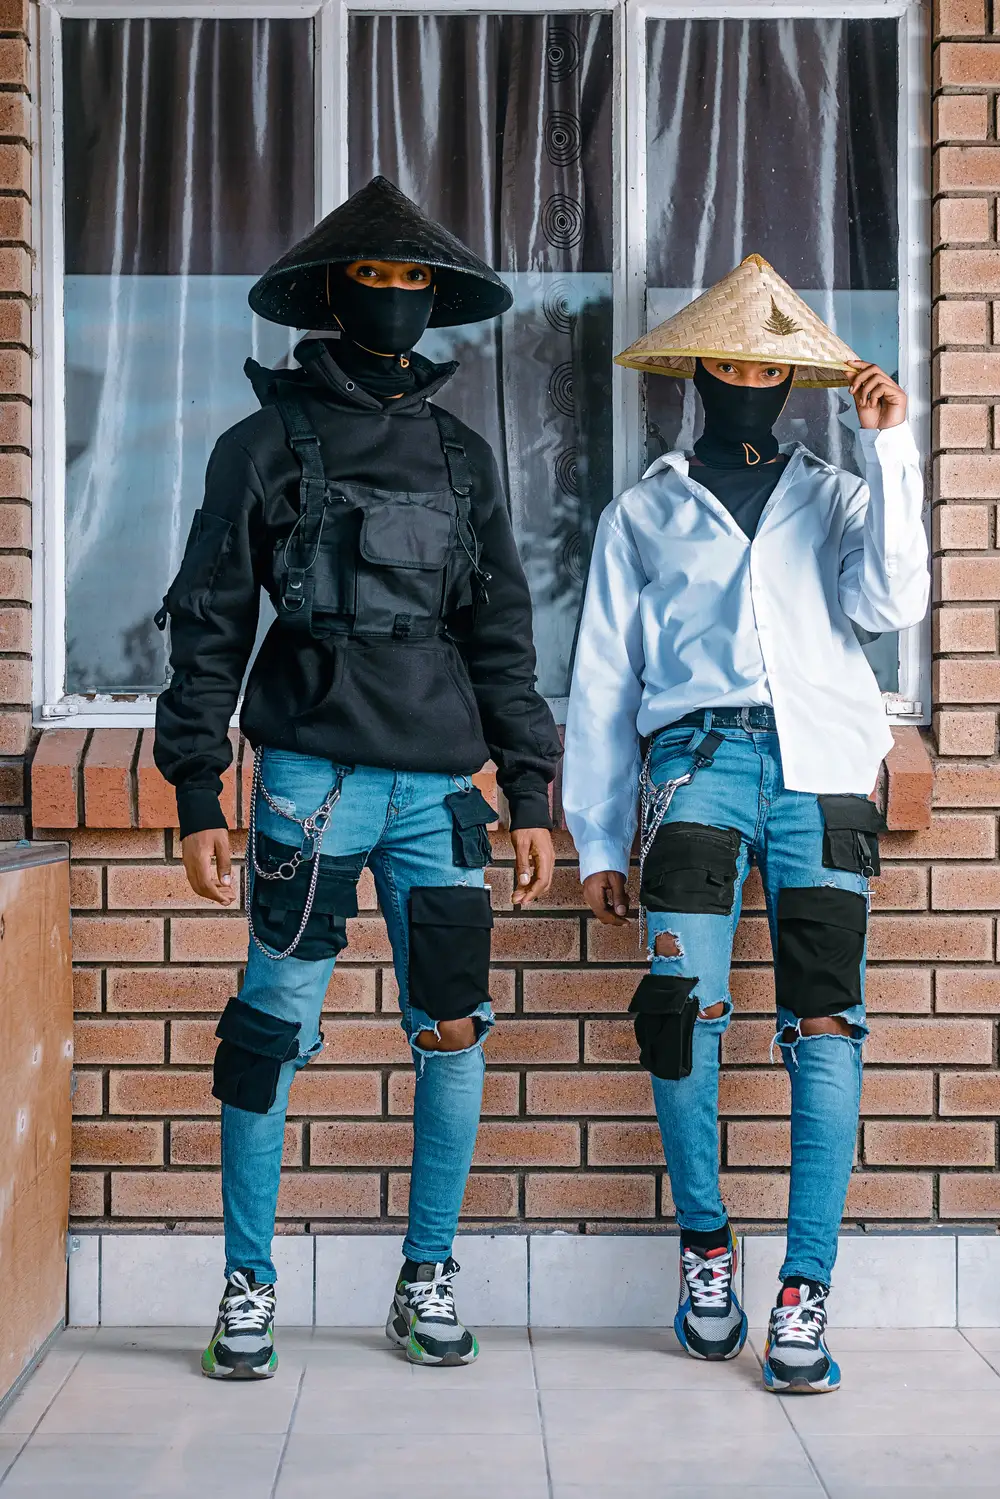 Ninja twins in jeans